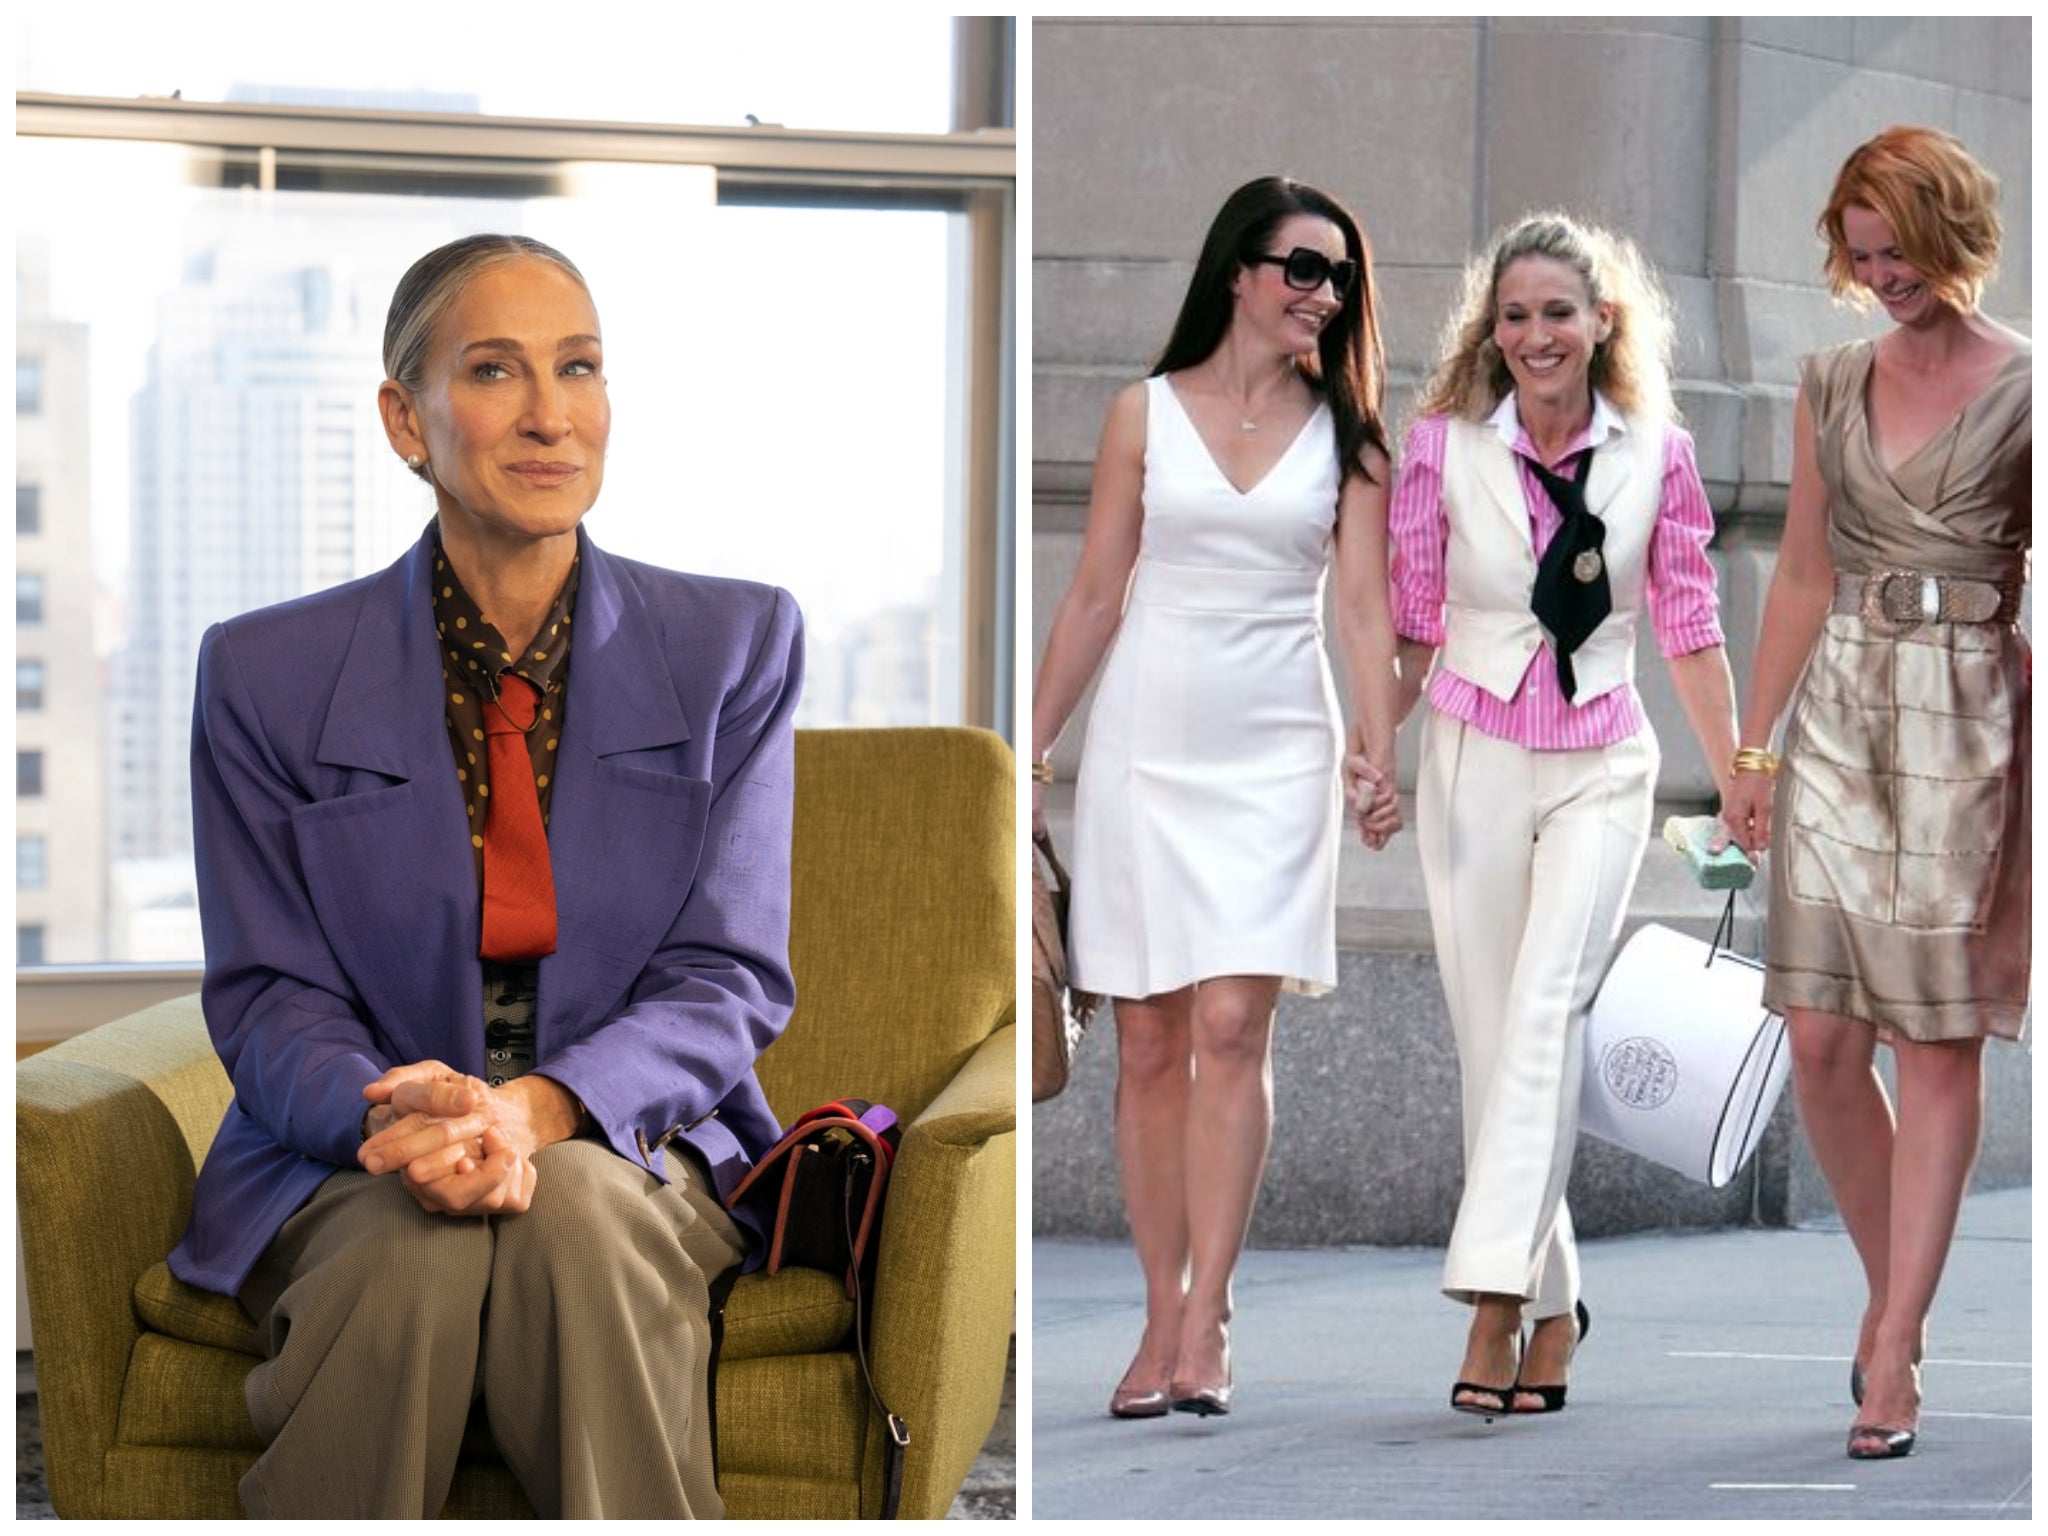 El traje violeta de Carrie en AJLT (izquierda) puede ser un homenaje al traje que usó en la primera temporada de SATC (derecha)